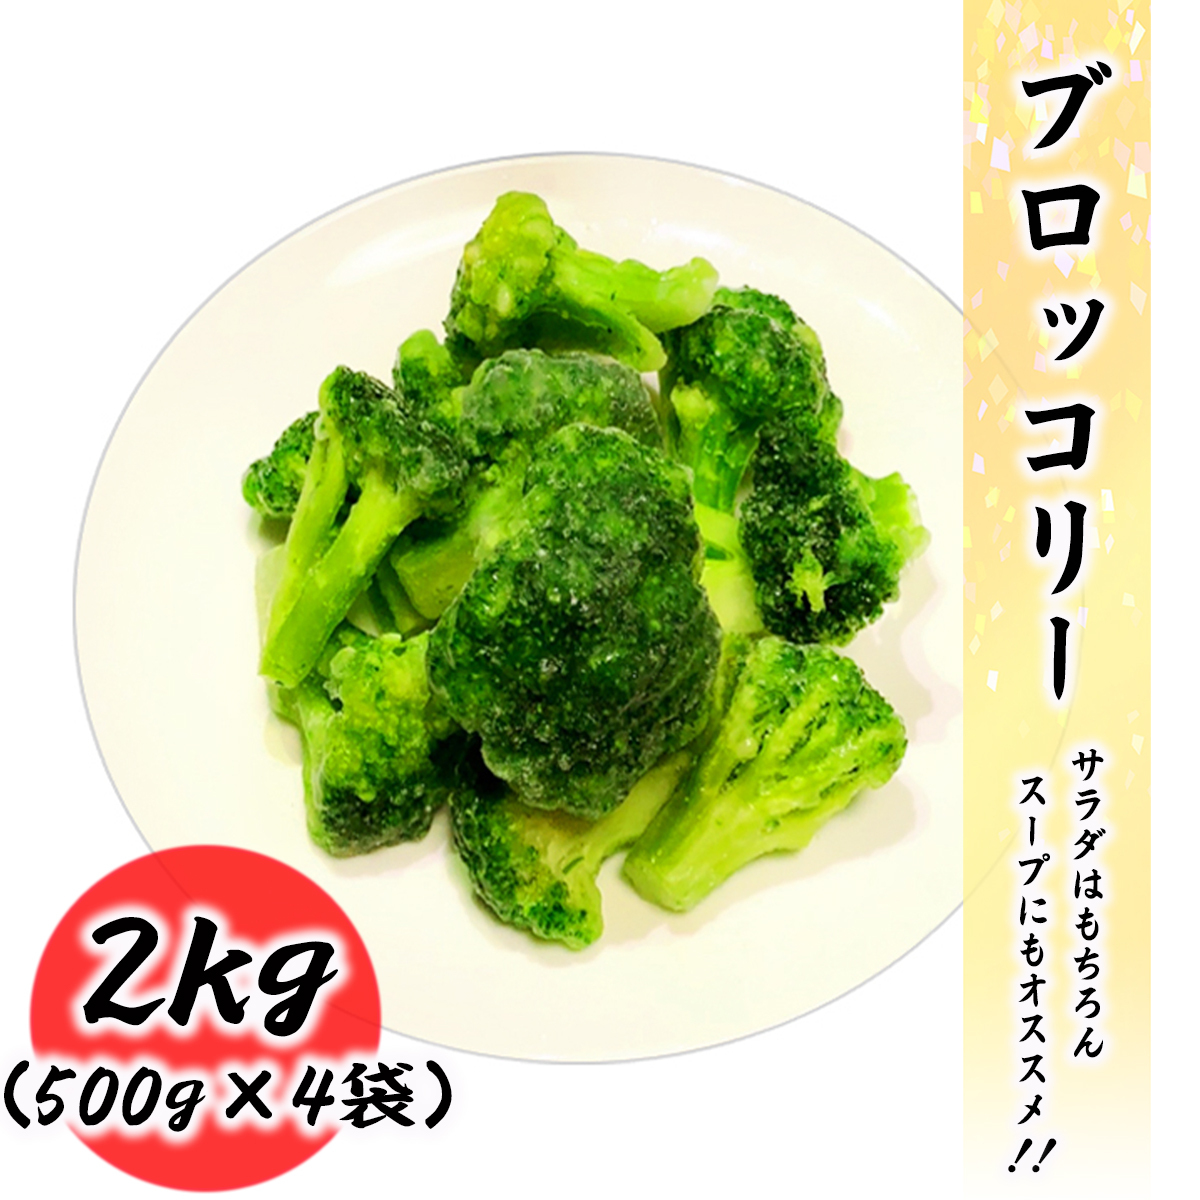 冷凍 超爆安 ブロッコリー 2kg 常備に便利な冷凍野菜 業務用 円高還元 500g×4袋